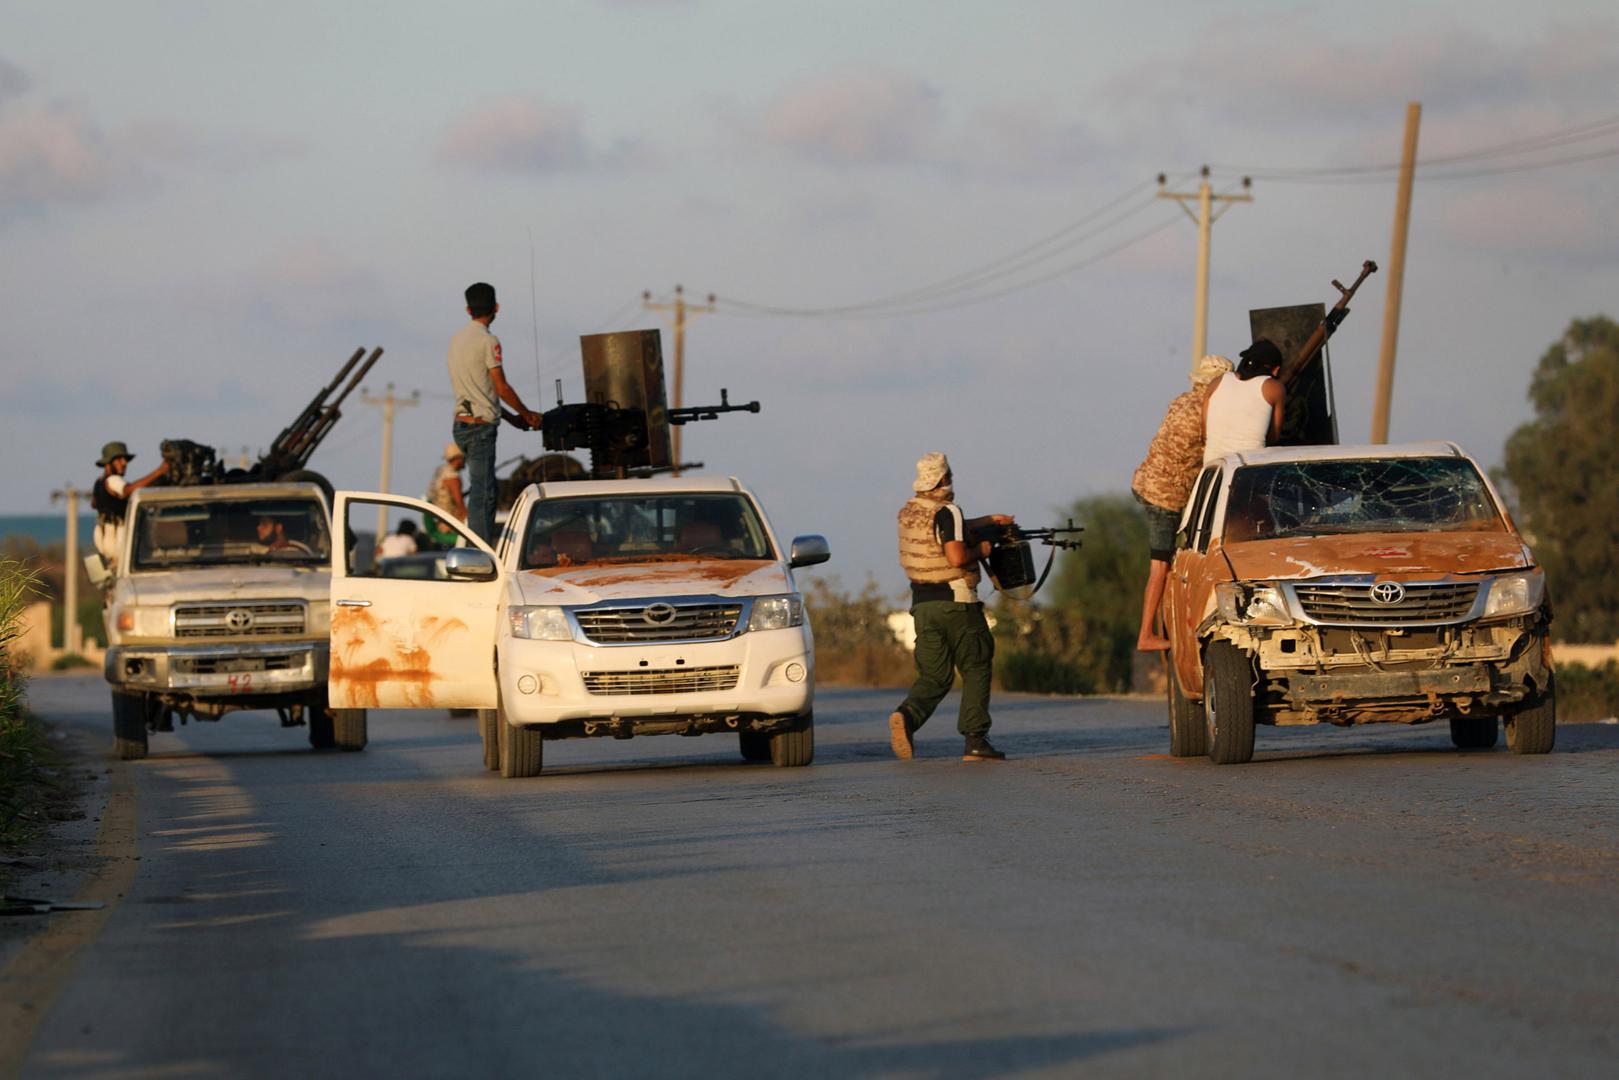 Des miliciens alliés au Gouvernement d’union nationale en Libye, reconnu par la communauté internationale, photographiés lors d’affrontements avec un groupe armé rival à Tripoli, dans le nord-ouest du pays, le 22 septembre 2018. © 2018 Hani Amara/Reuters